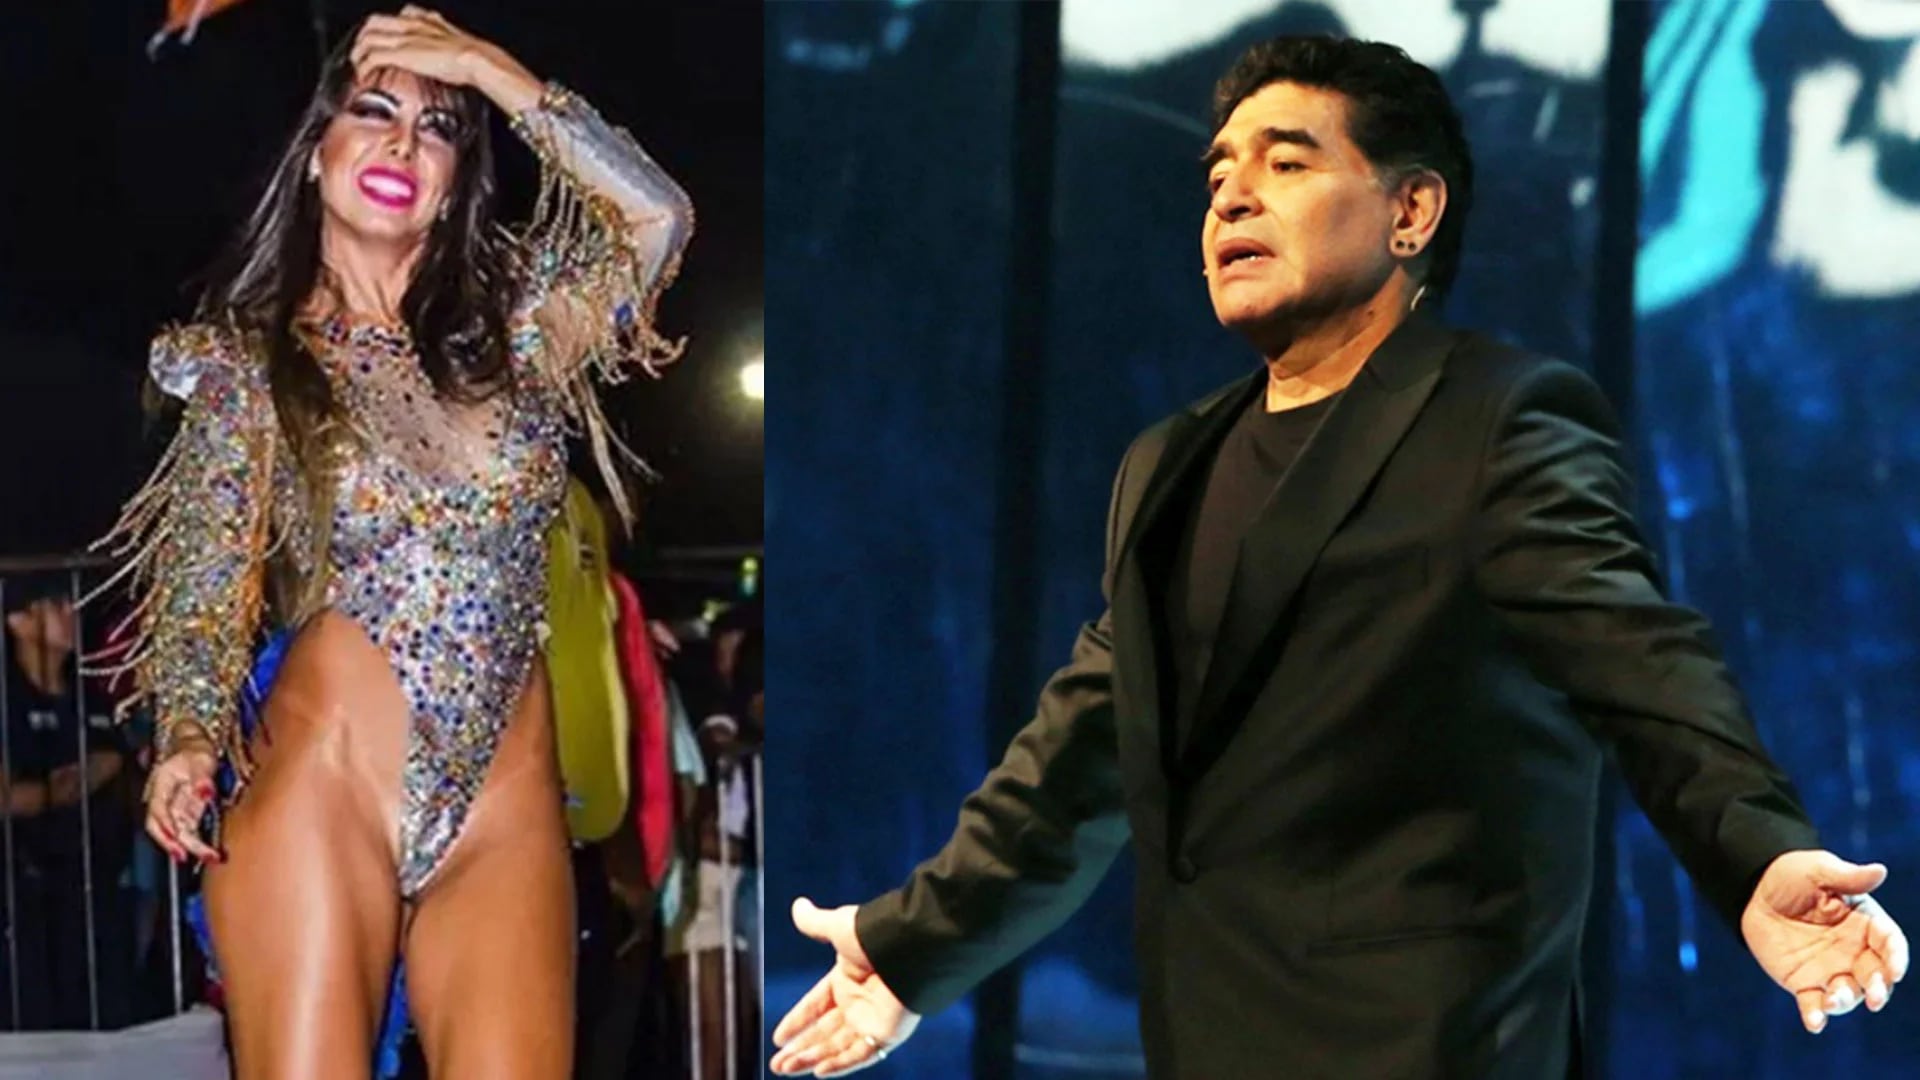 Se filtraron unos audios hot que Diego Maradona le mandó a la bailarina Gisela Ramírez Méndez, a quien conoció este verano en los Carnavales de Corrientes